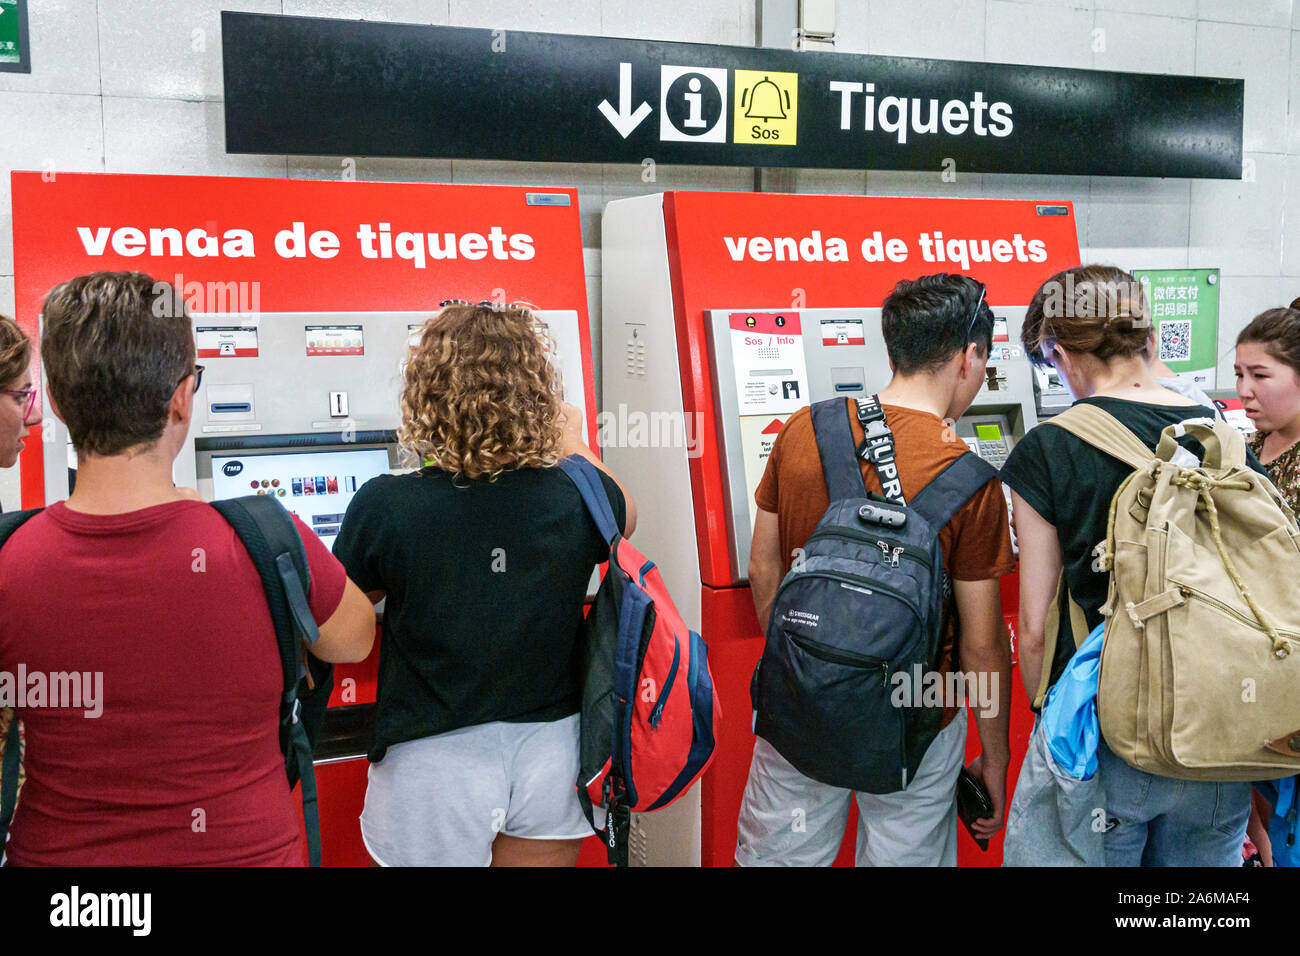 Barcelone Espagne, Catalogne Sagrada Familia, station de métro, Transports Metropolitans de Barcelone, TMB, vente de billets, homme, femme, adolescent, ES190902 Banque D'Images